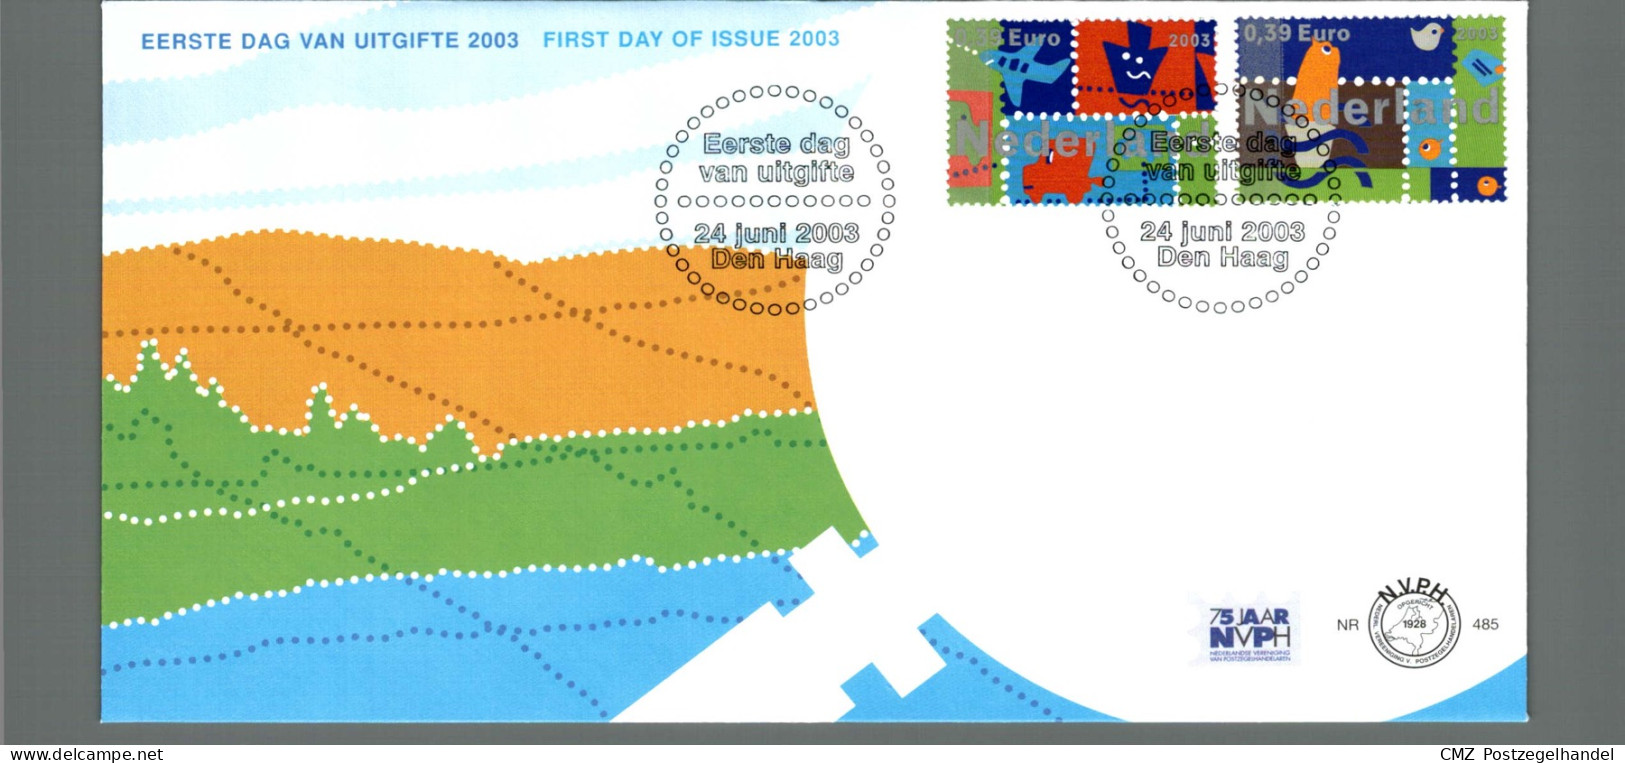 Jaarcollectie FDC eerstedagenveloppen 2003 onbeschreven